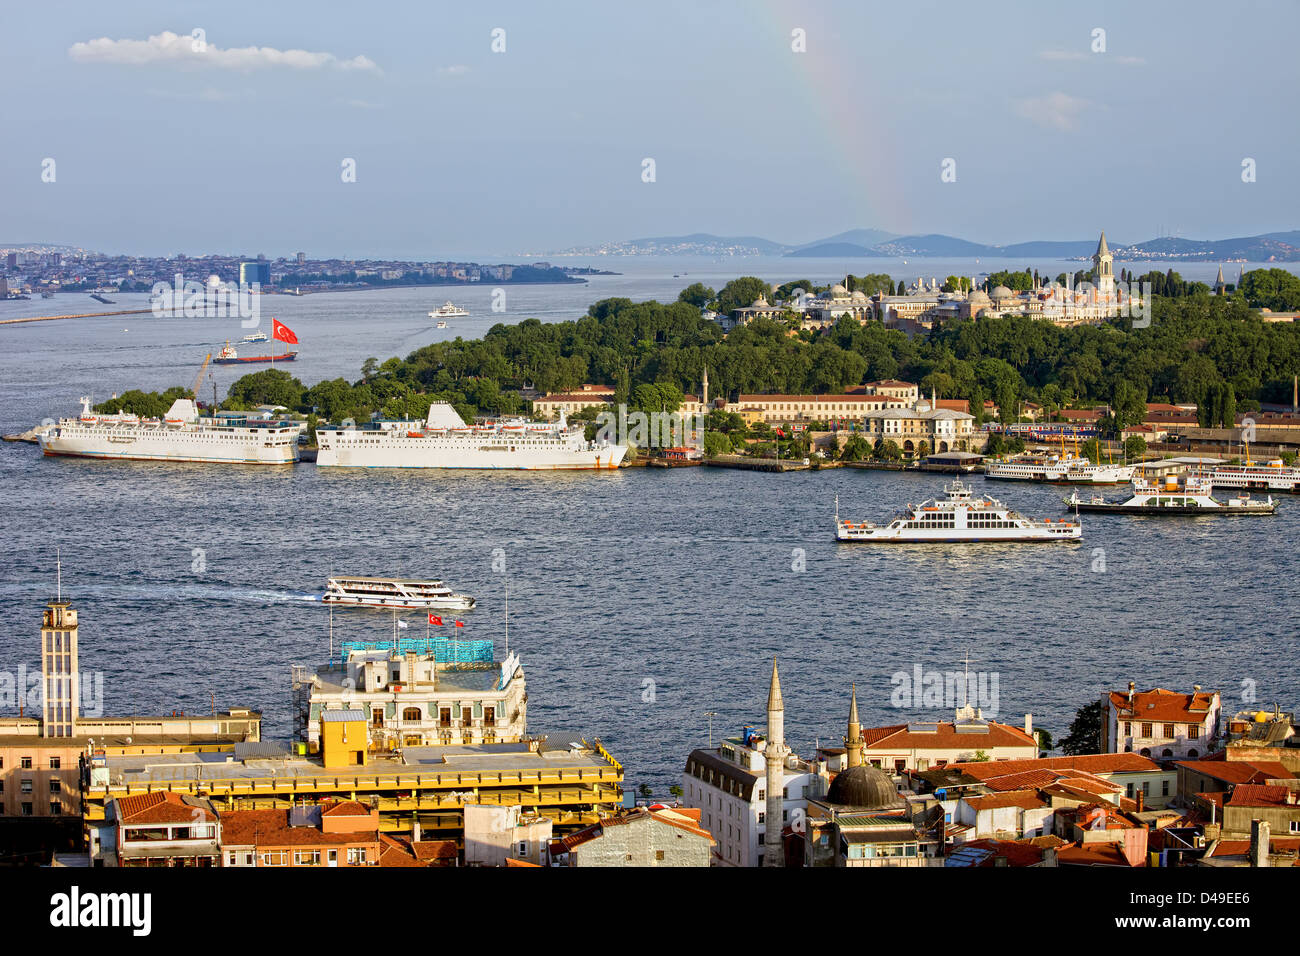 Città di istanbul cityscape, vista dal quartiere di Beyoglu sulla lo stretto del Bosforo e Palazzo Topkapi su una collina. Foto Stock